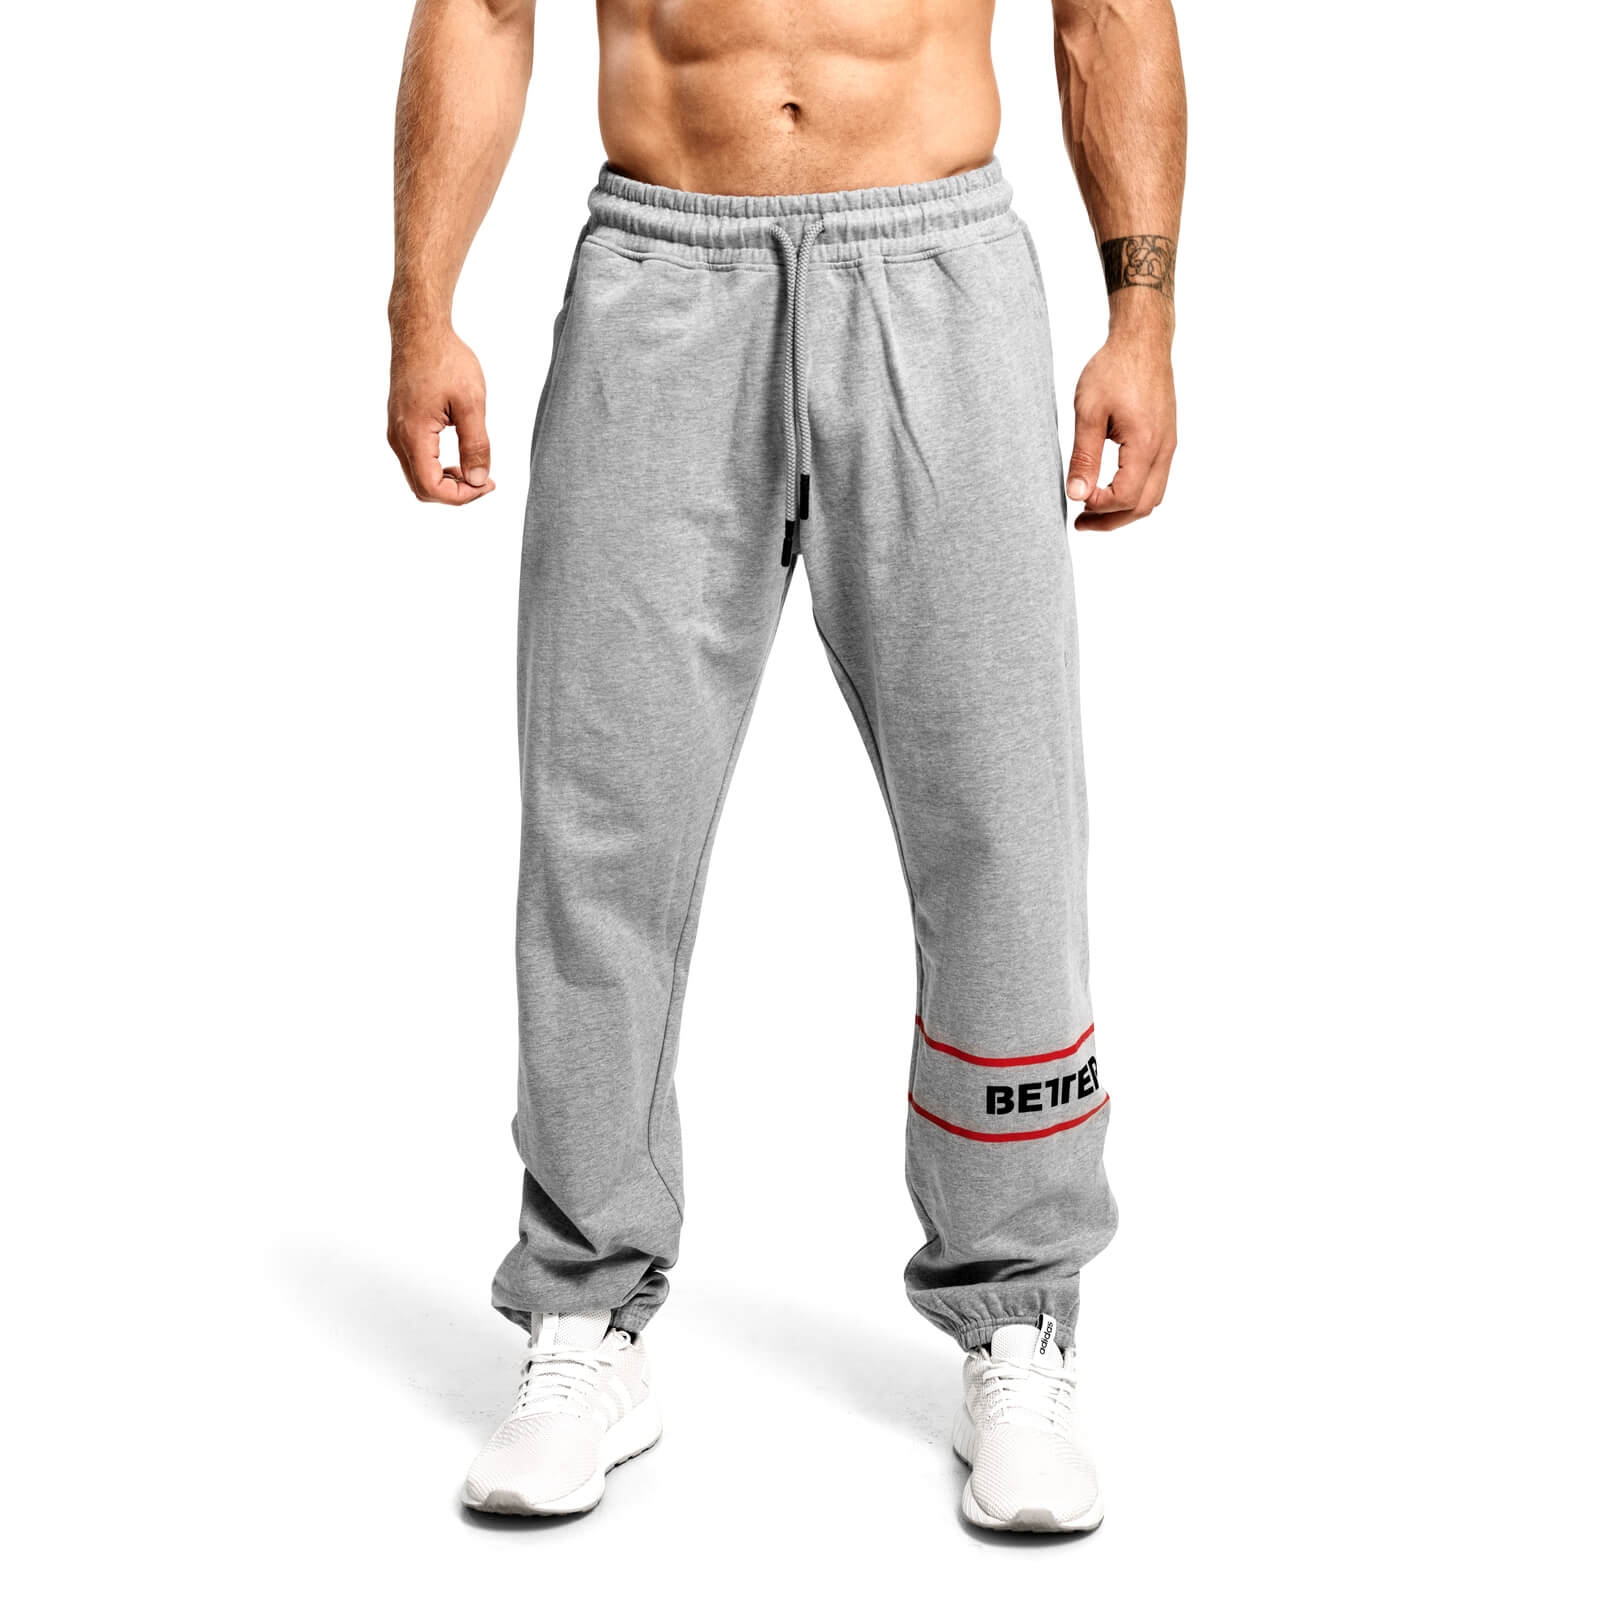 Kolla in Tribeca Sweat Pants, grey melange, Better Bodies hos SportGymButiken.se